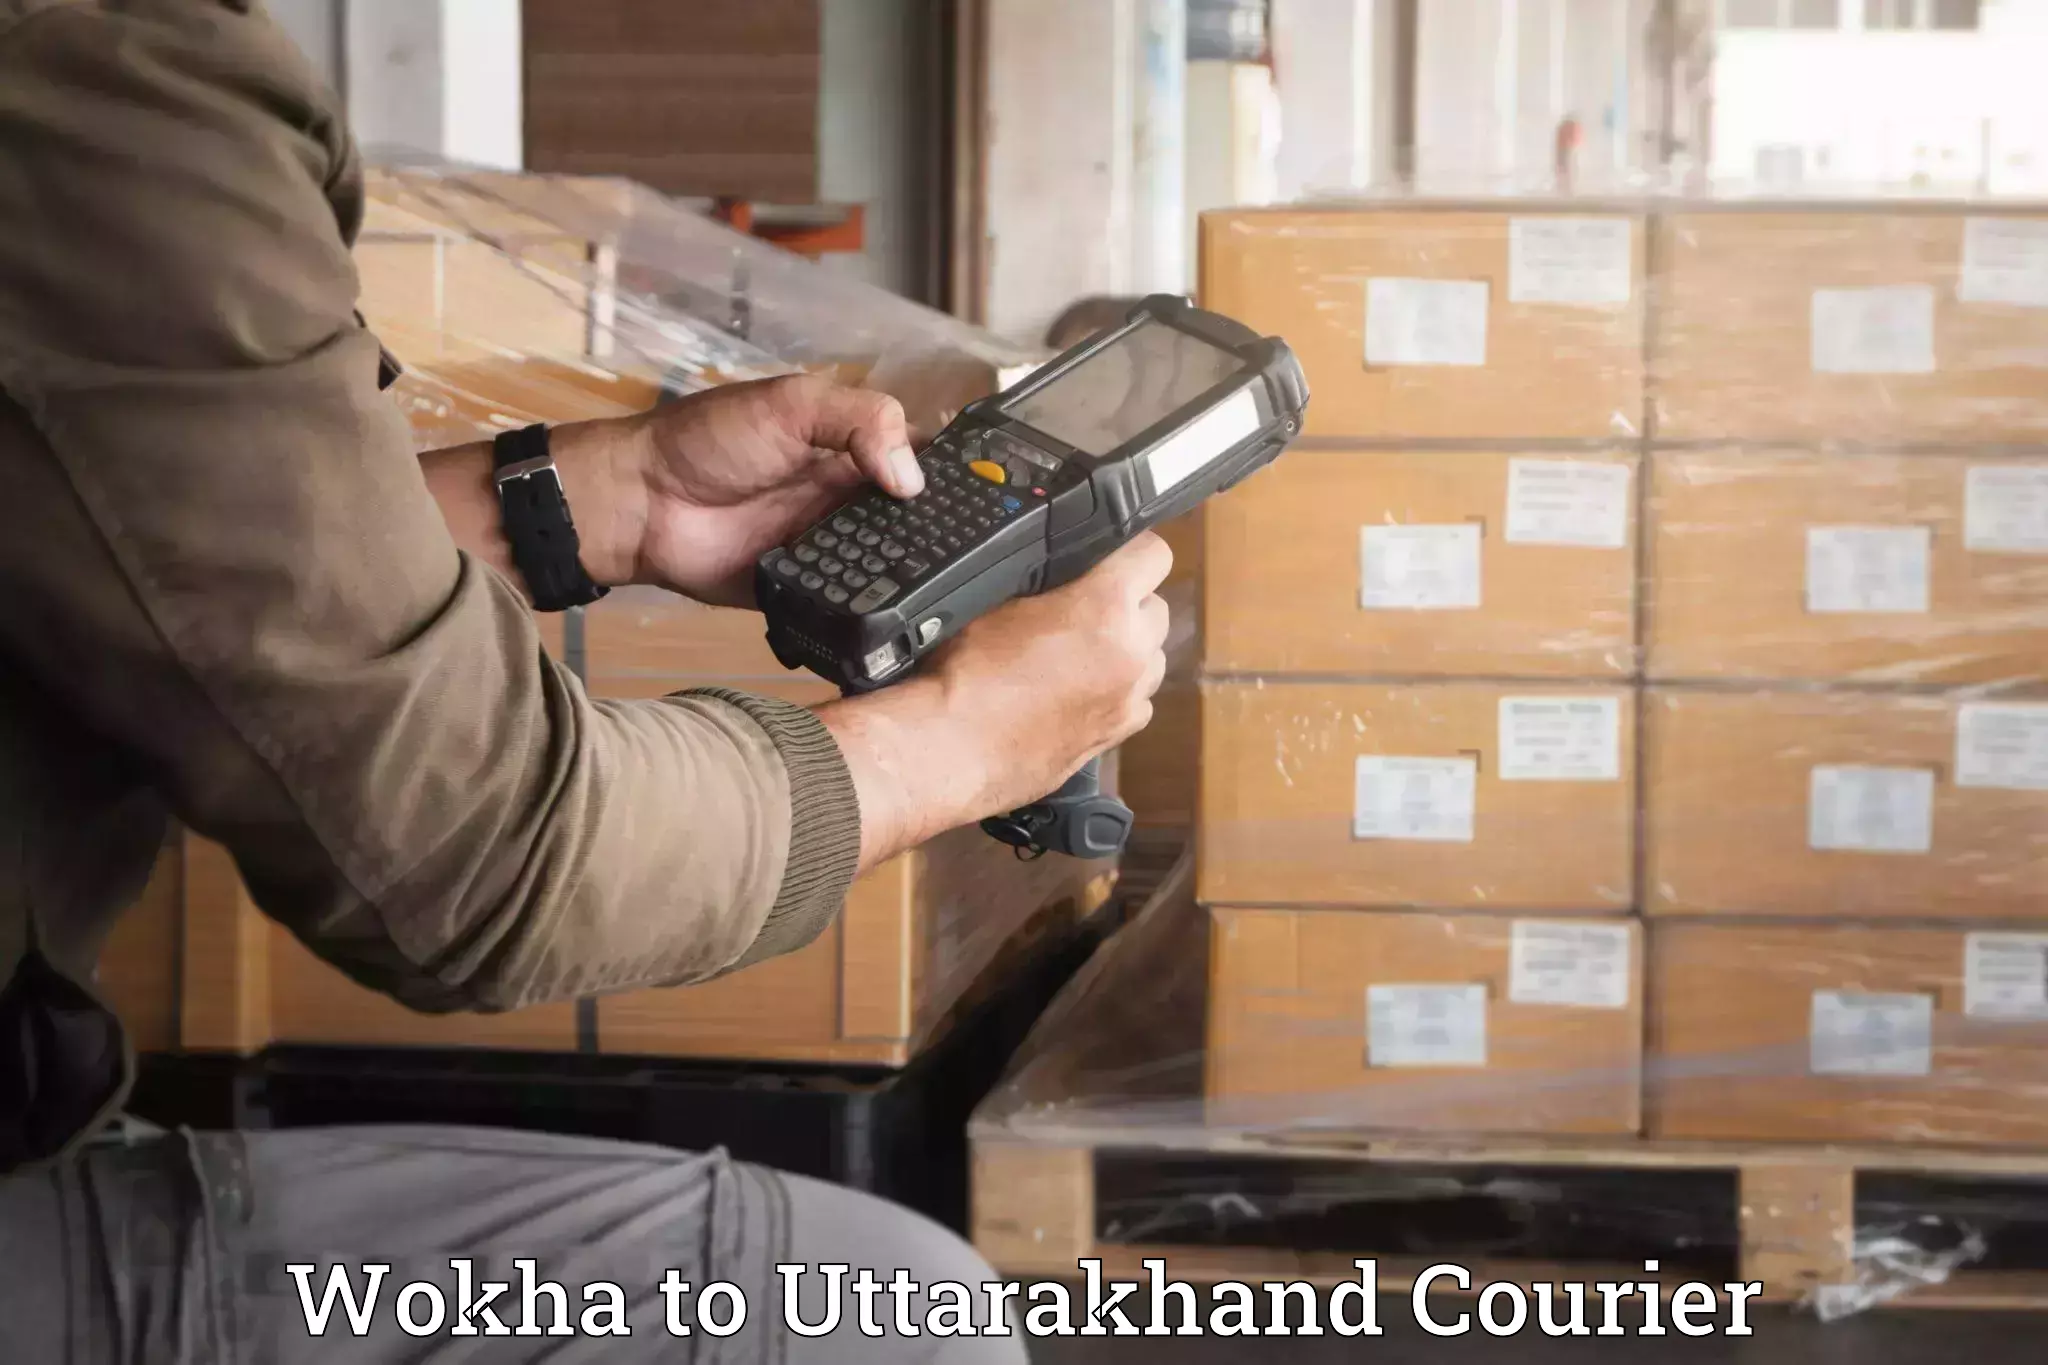 Professional furniture movers Wokha to Rudraprayag